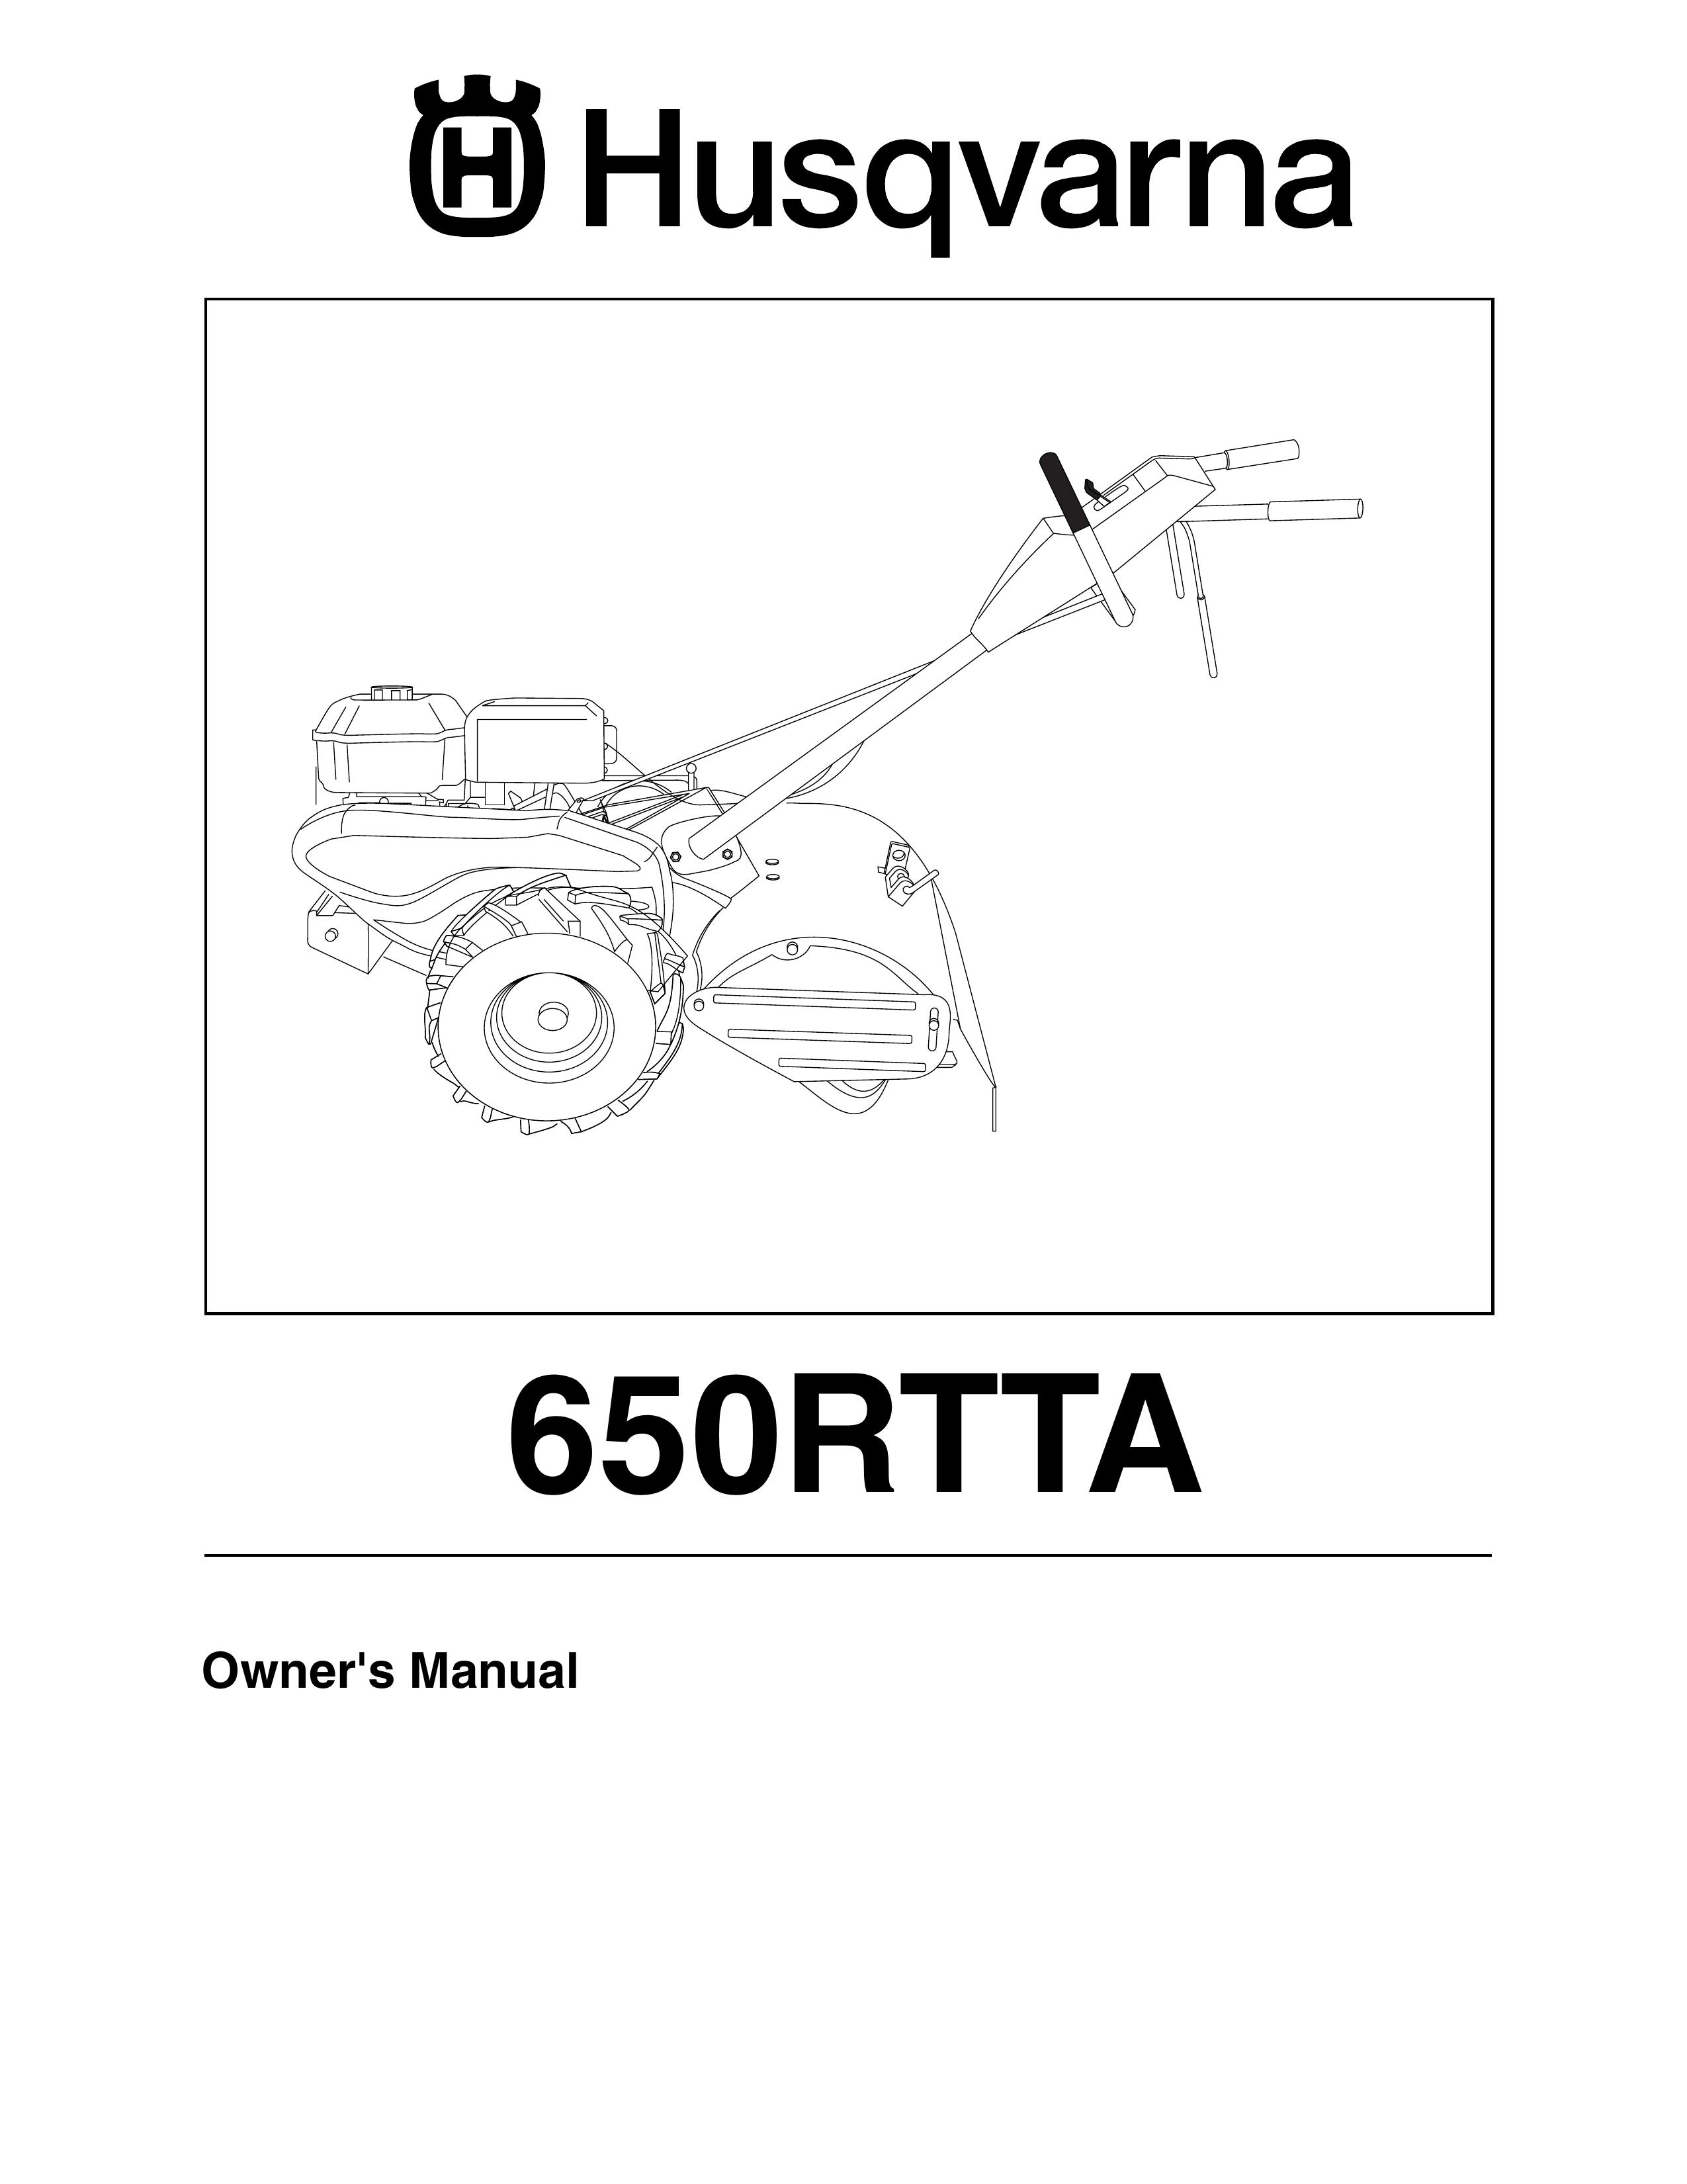 Husqvarna 650RTTA Tiller User Manual